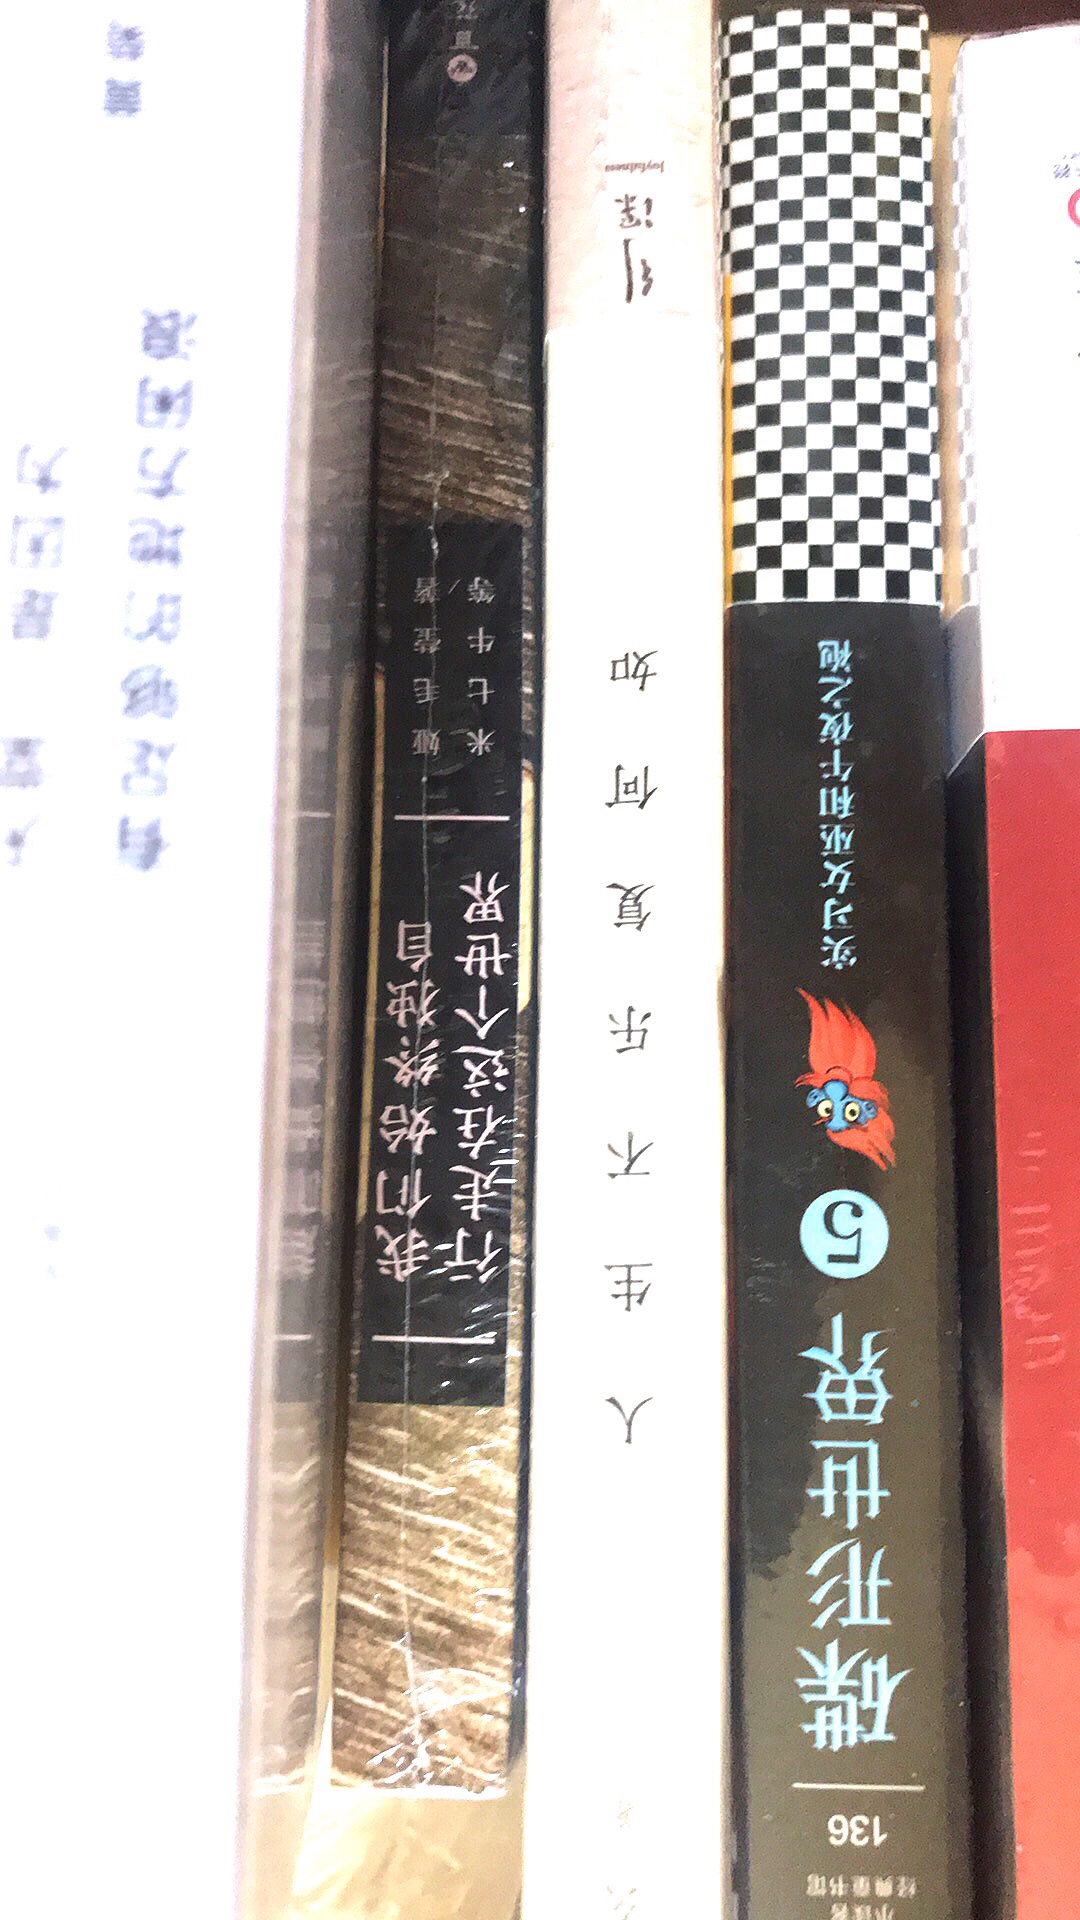 林清玄先生的書，還是應該多買幾本的。你說呢。